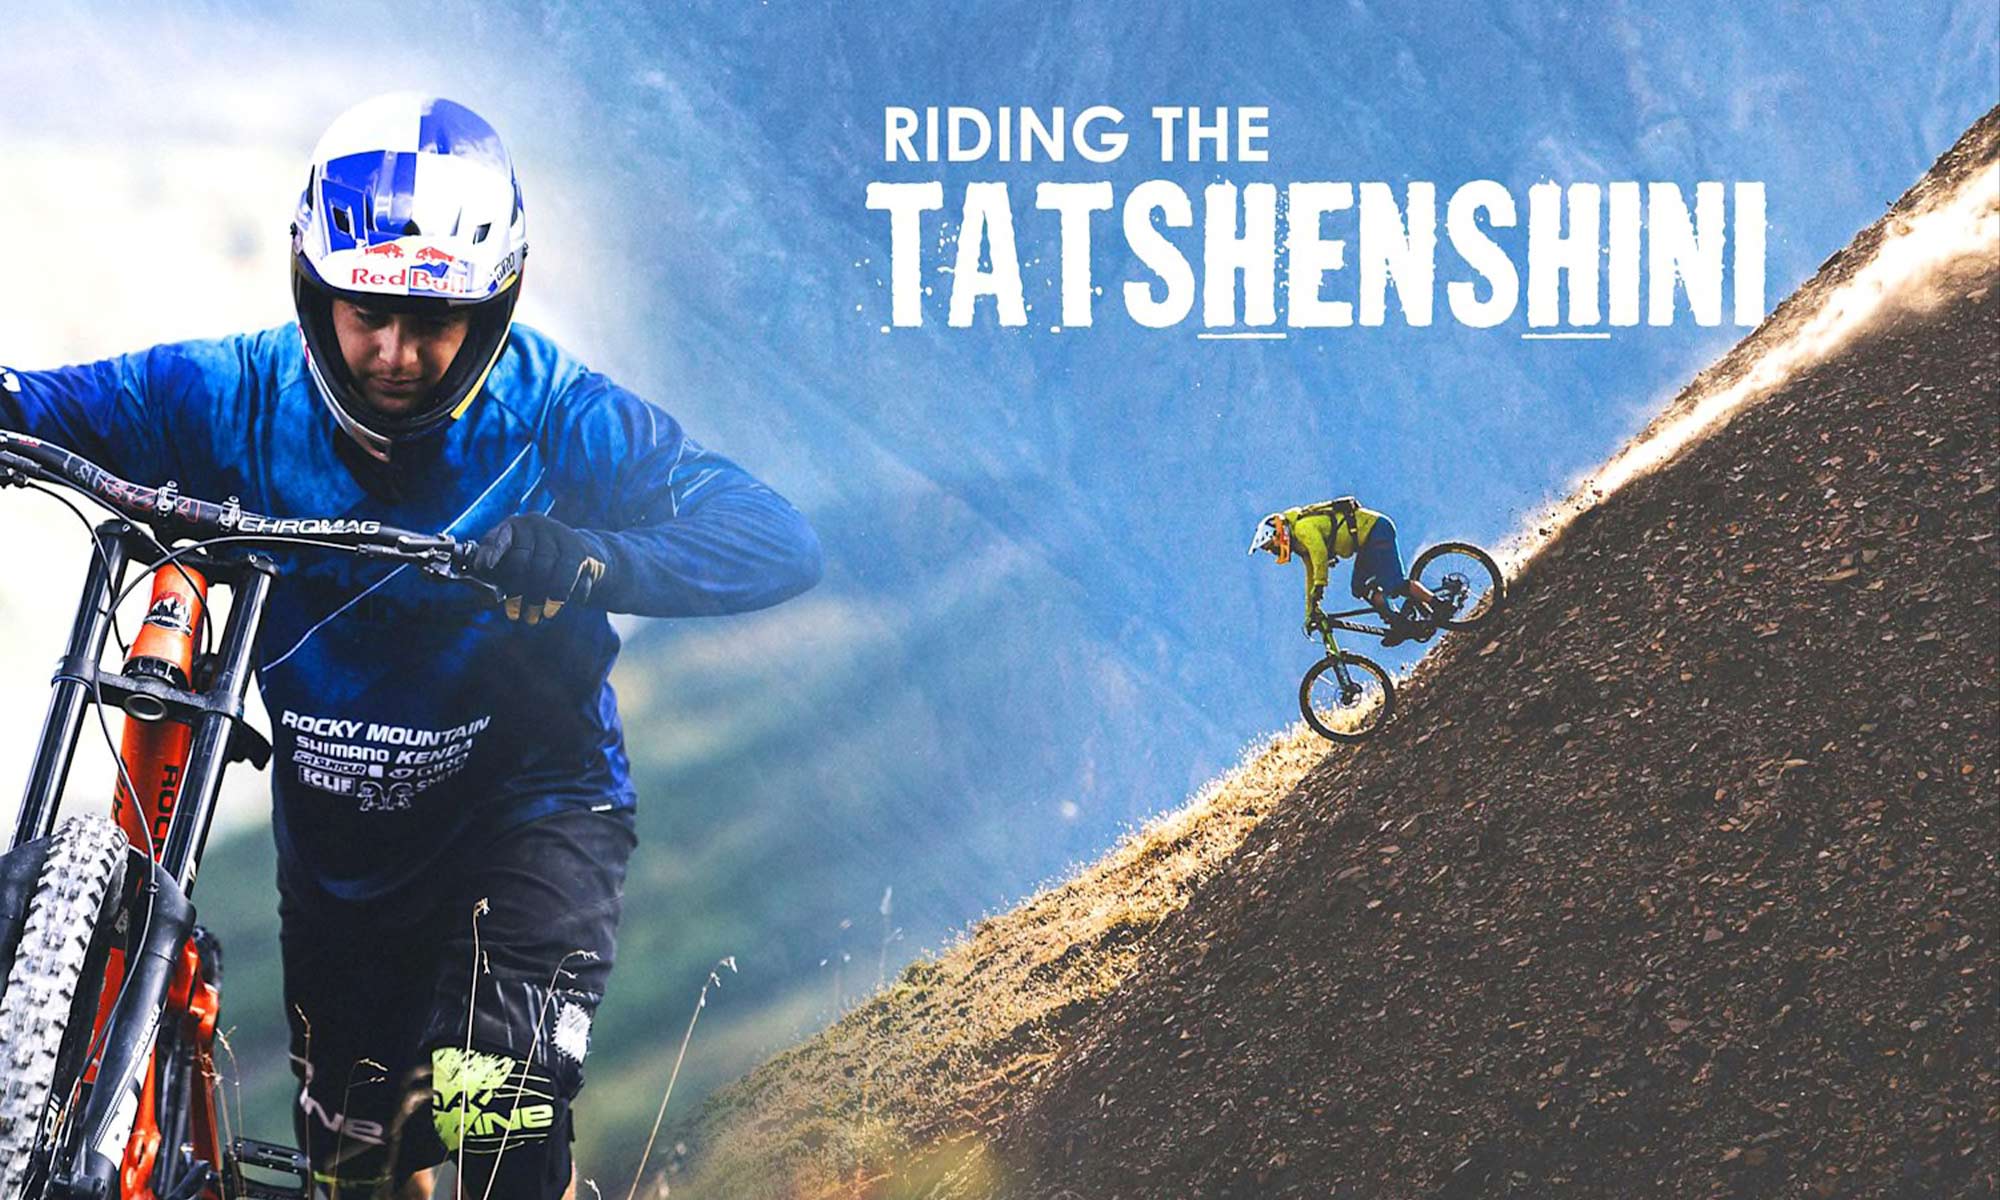 Riding the Tatshenshini